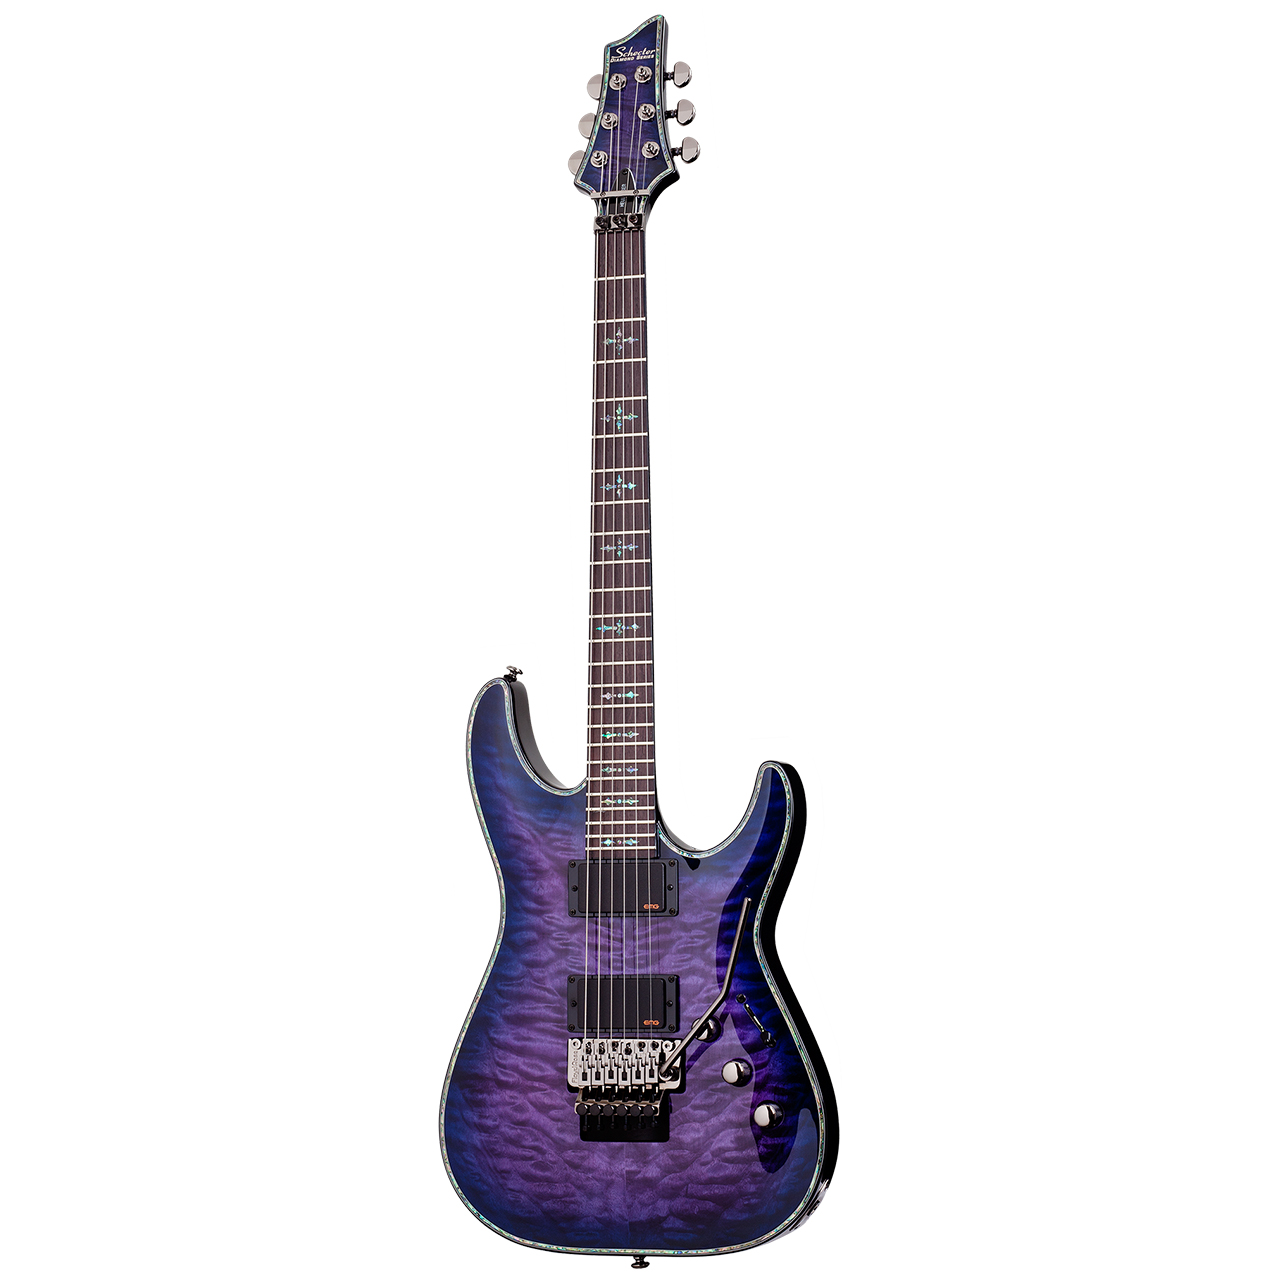 گیتار الکتریک شکتر مدل Hellraiser C-1 FR-3005